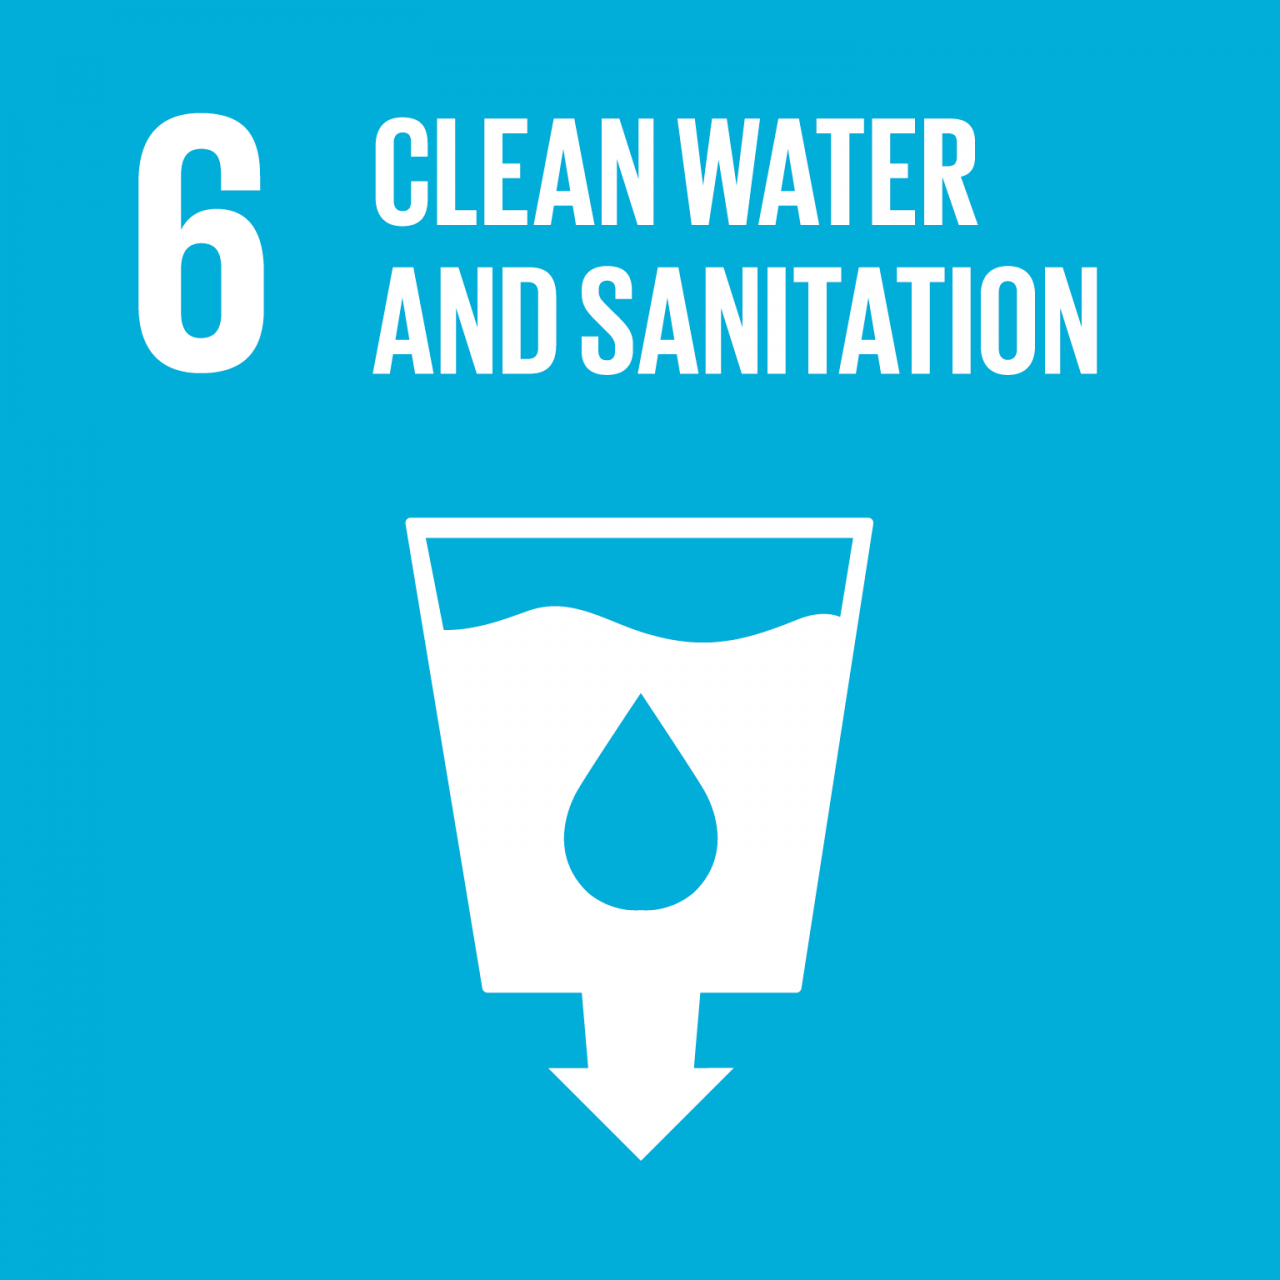 Agenda 2030: gli obiettivi Ambientali di sviluppo sostenibile. SDG 6 – Acqua pulita e servizi igienico-sanitari